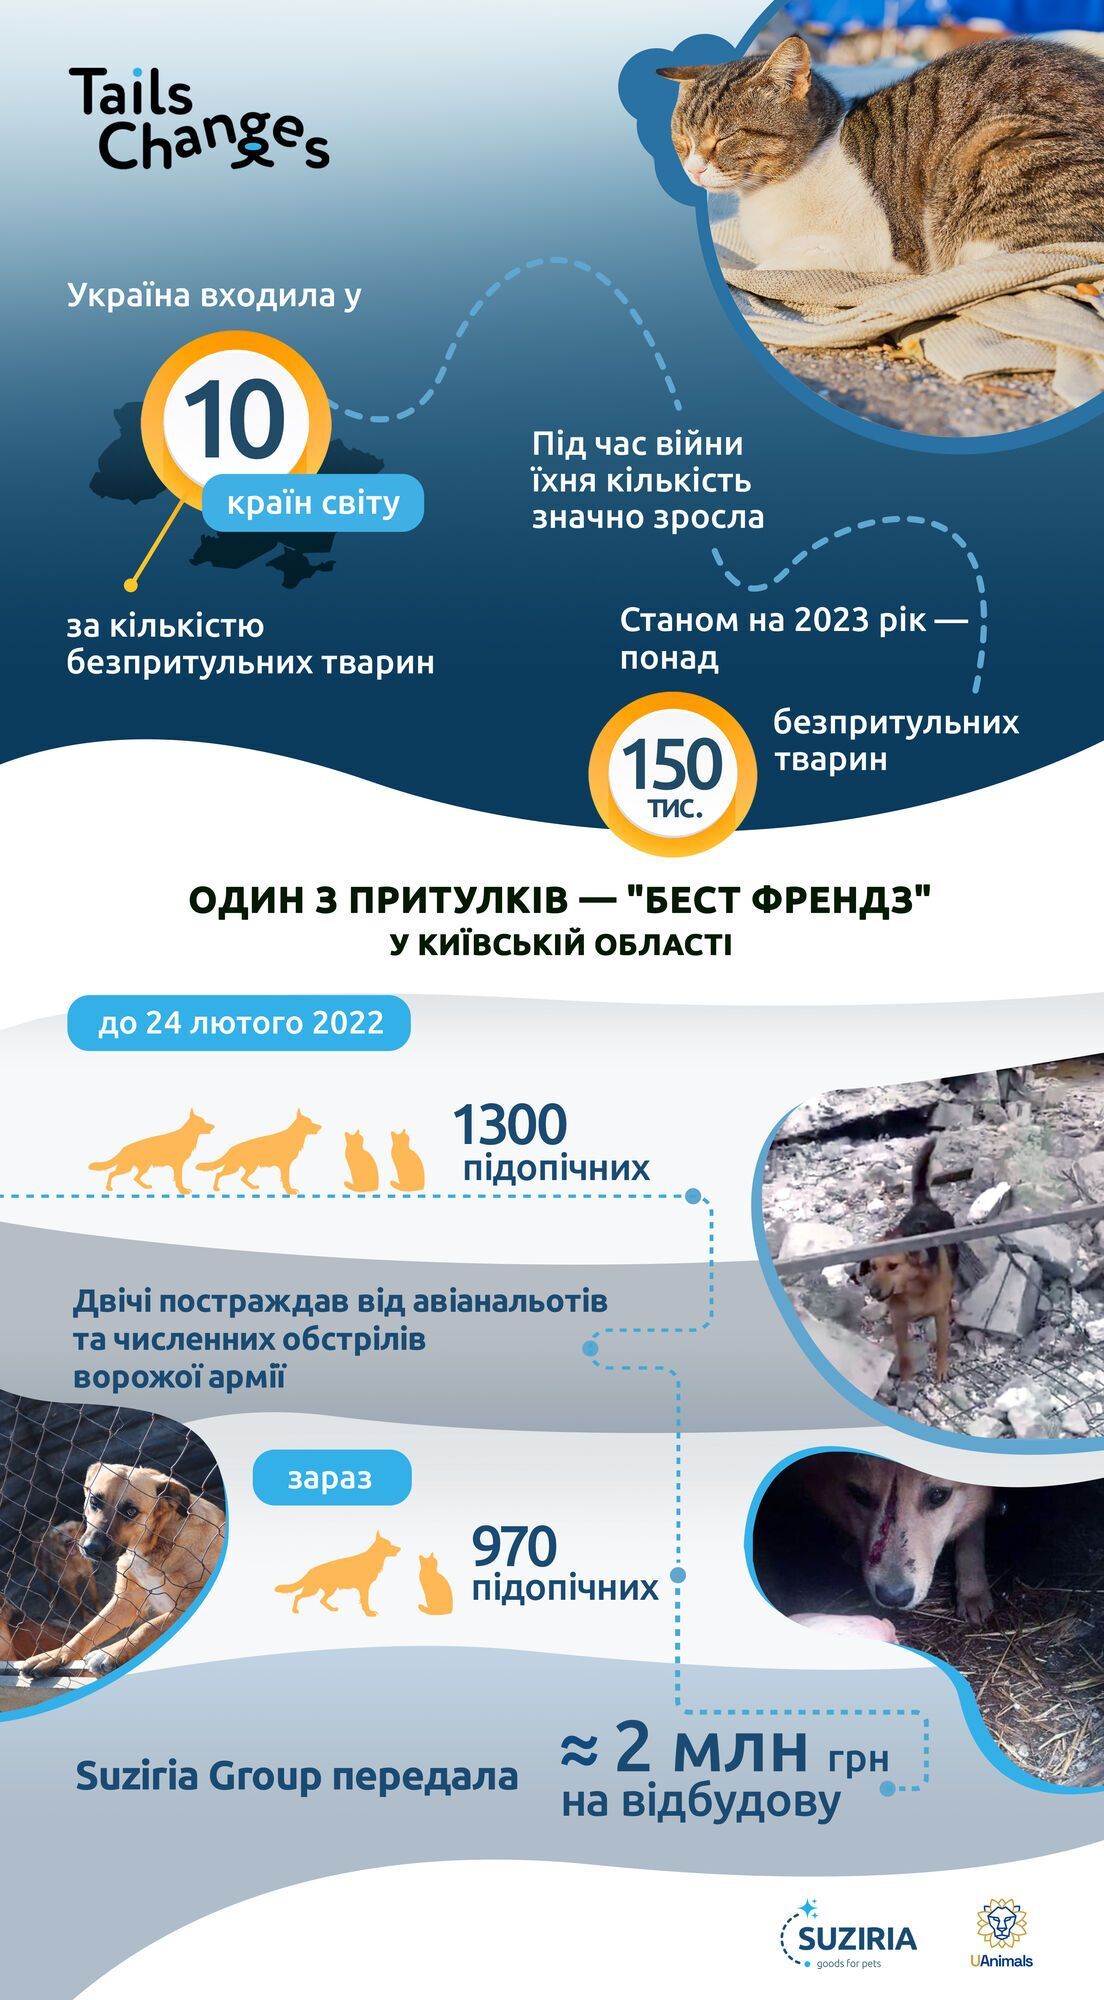 В Киевской области отстроят разрушенный приют для животных за почти 2 млн грн